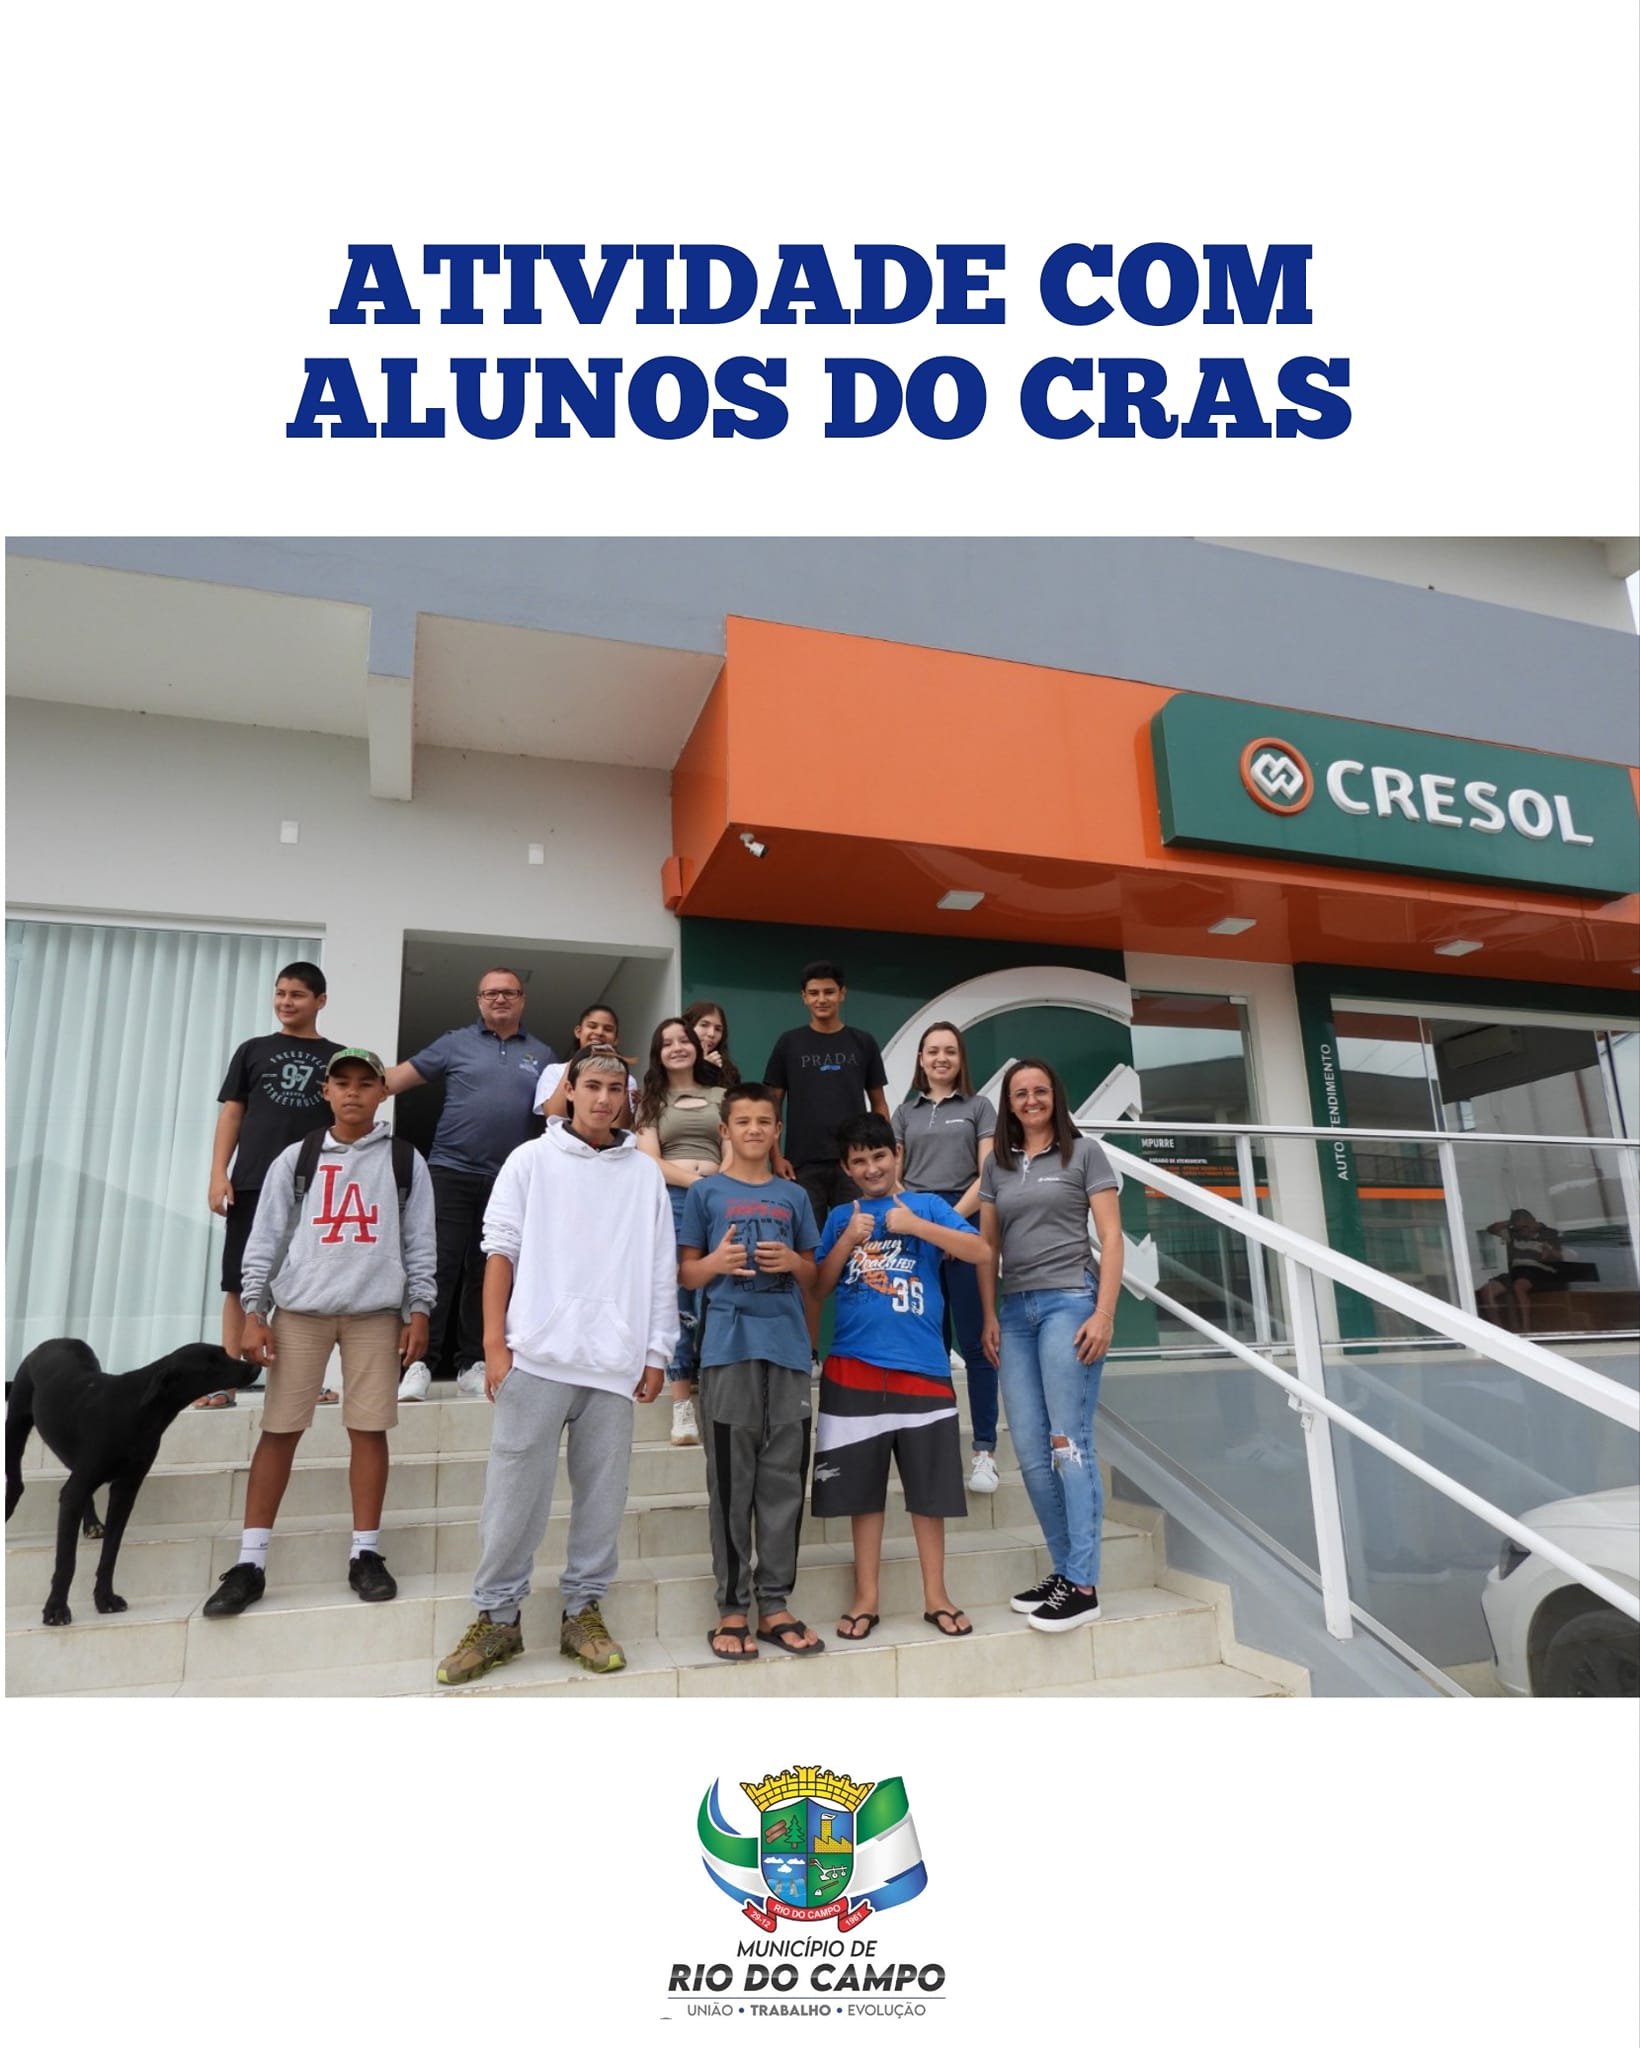 Cresol de Rio do Campo realiza atividades com alunos do CRAS